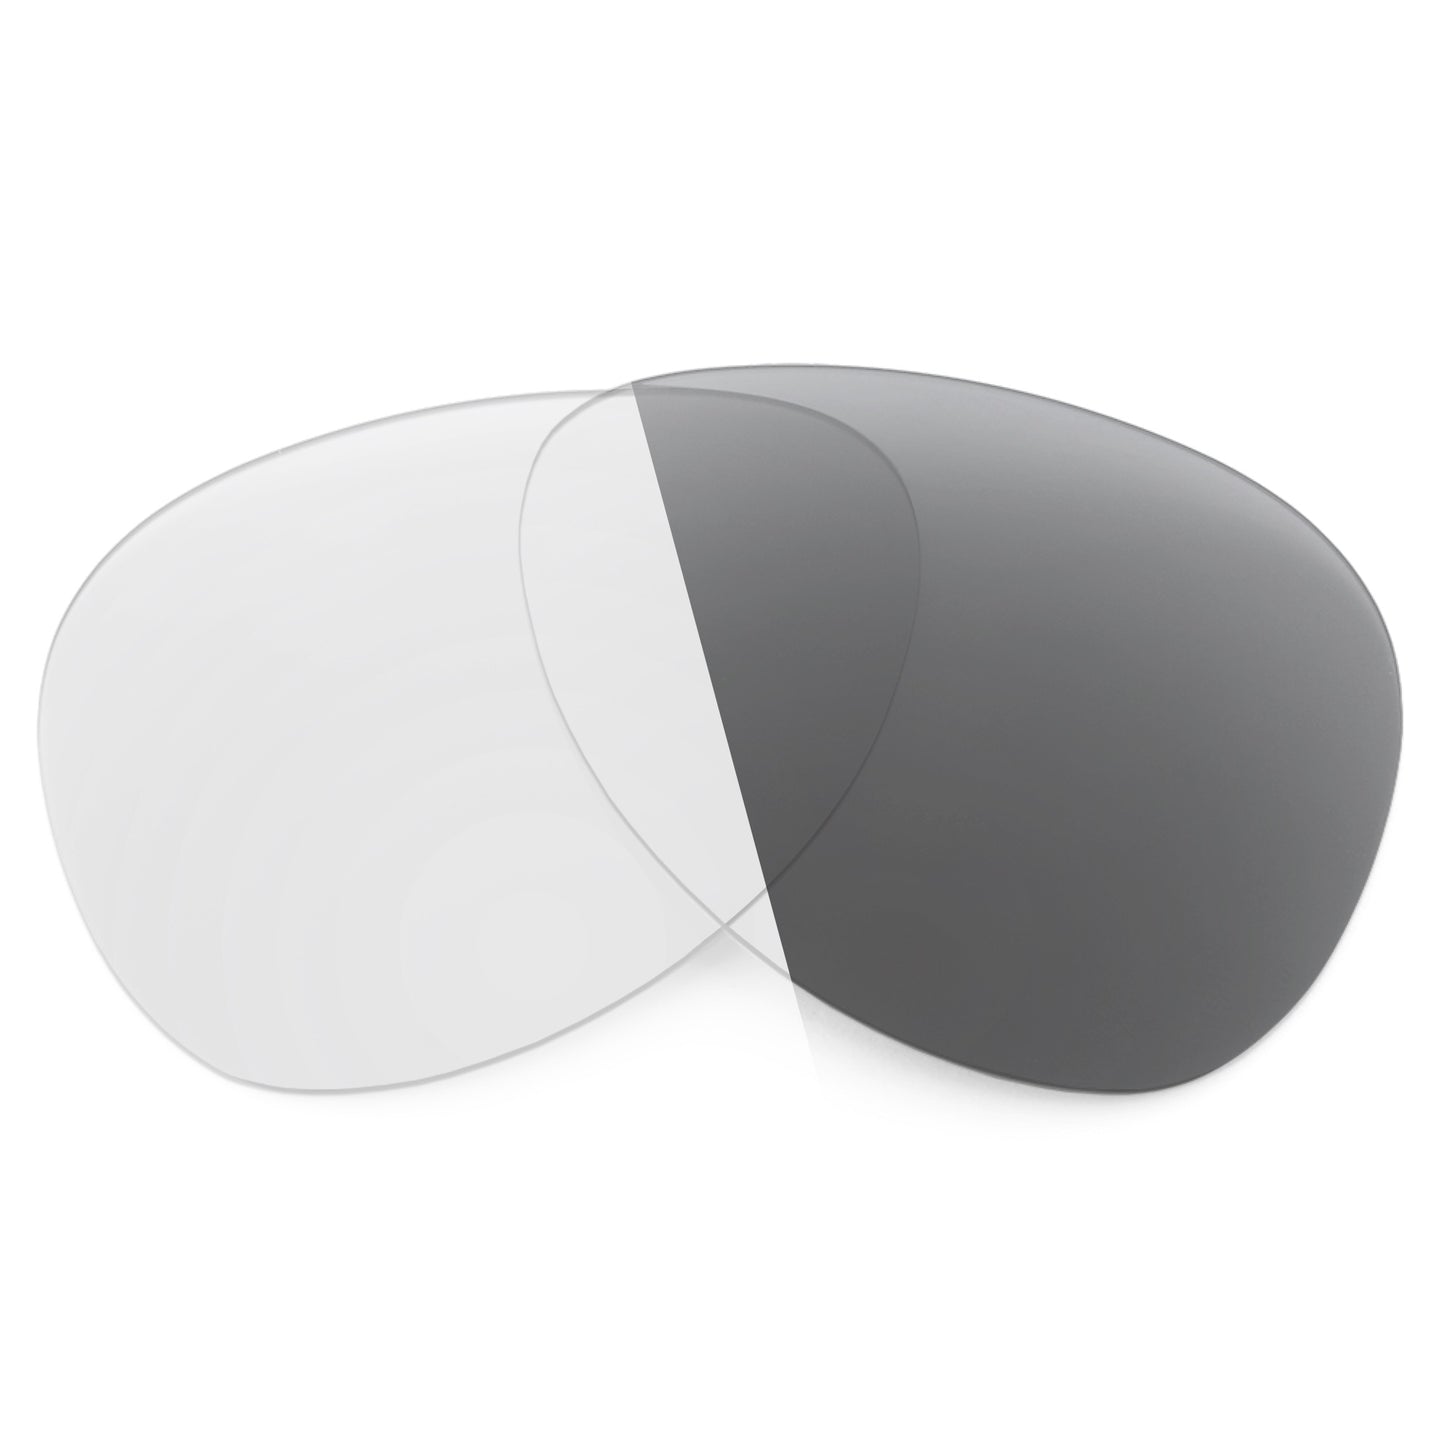 Revant replacement lenses for Maui Jim Mahina MJ229 Non-Polarized Adapt Gray Photochromic